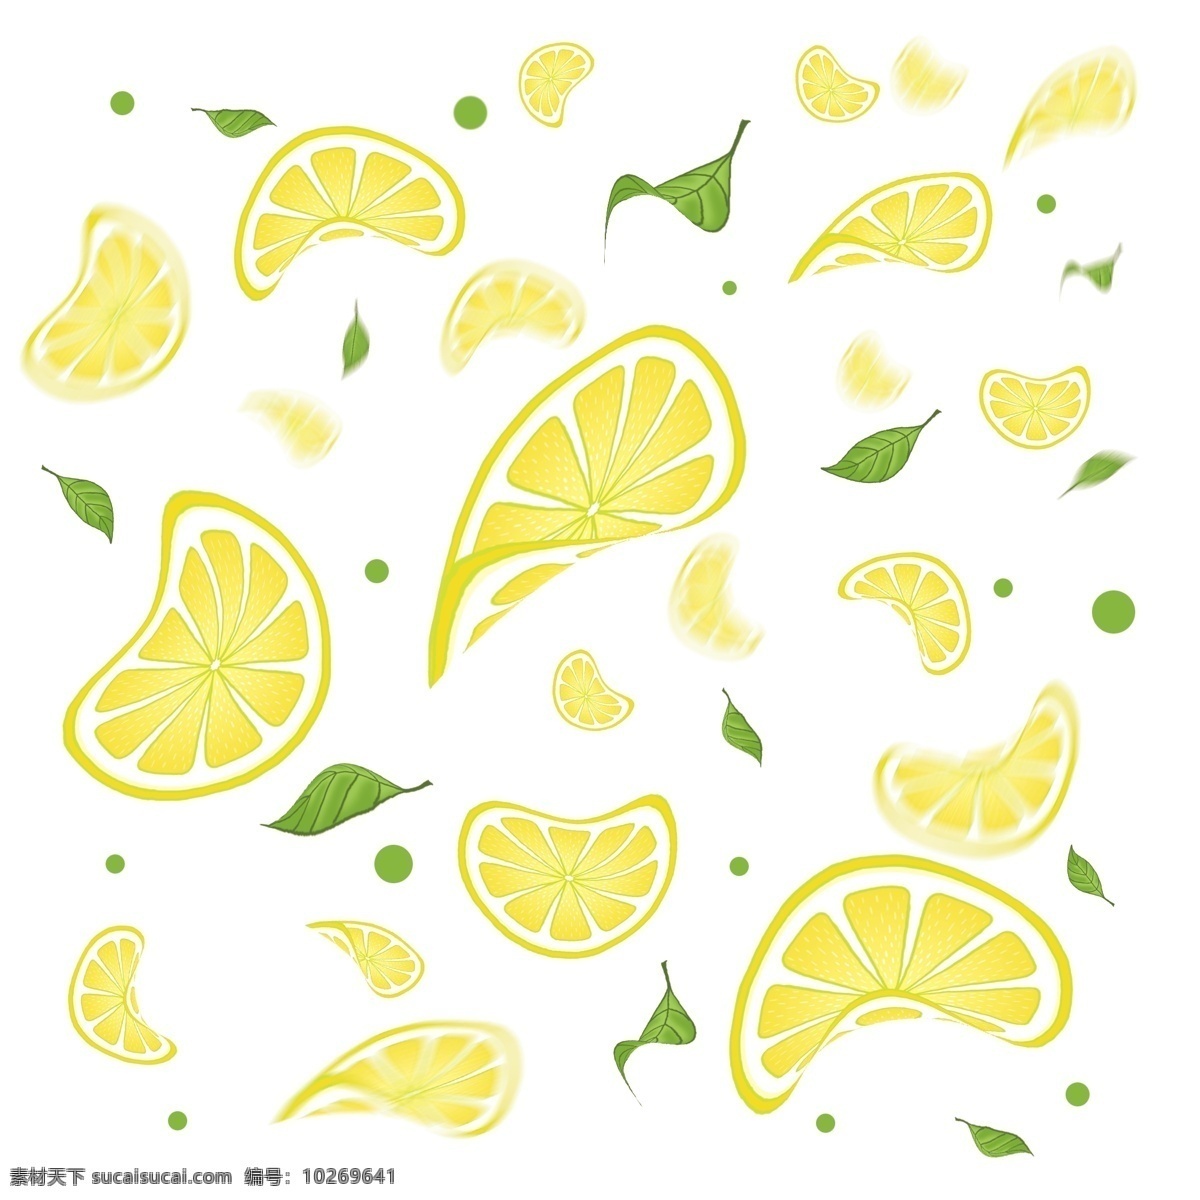 散落 黄色 柠檬 片 叶子 飘落 落叶 柠檬片 清凉 漂浮 饮品素材